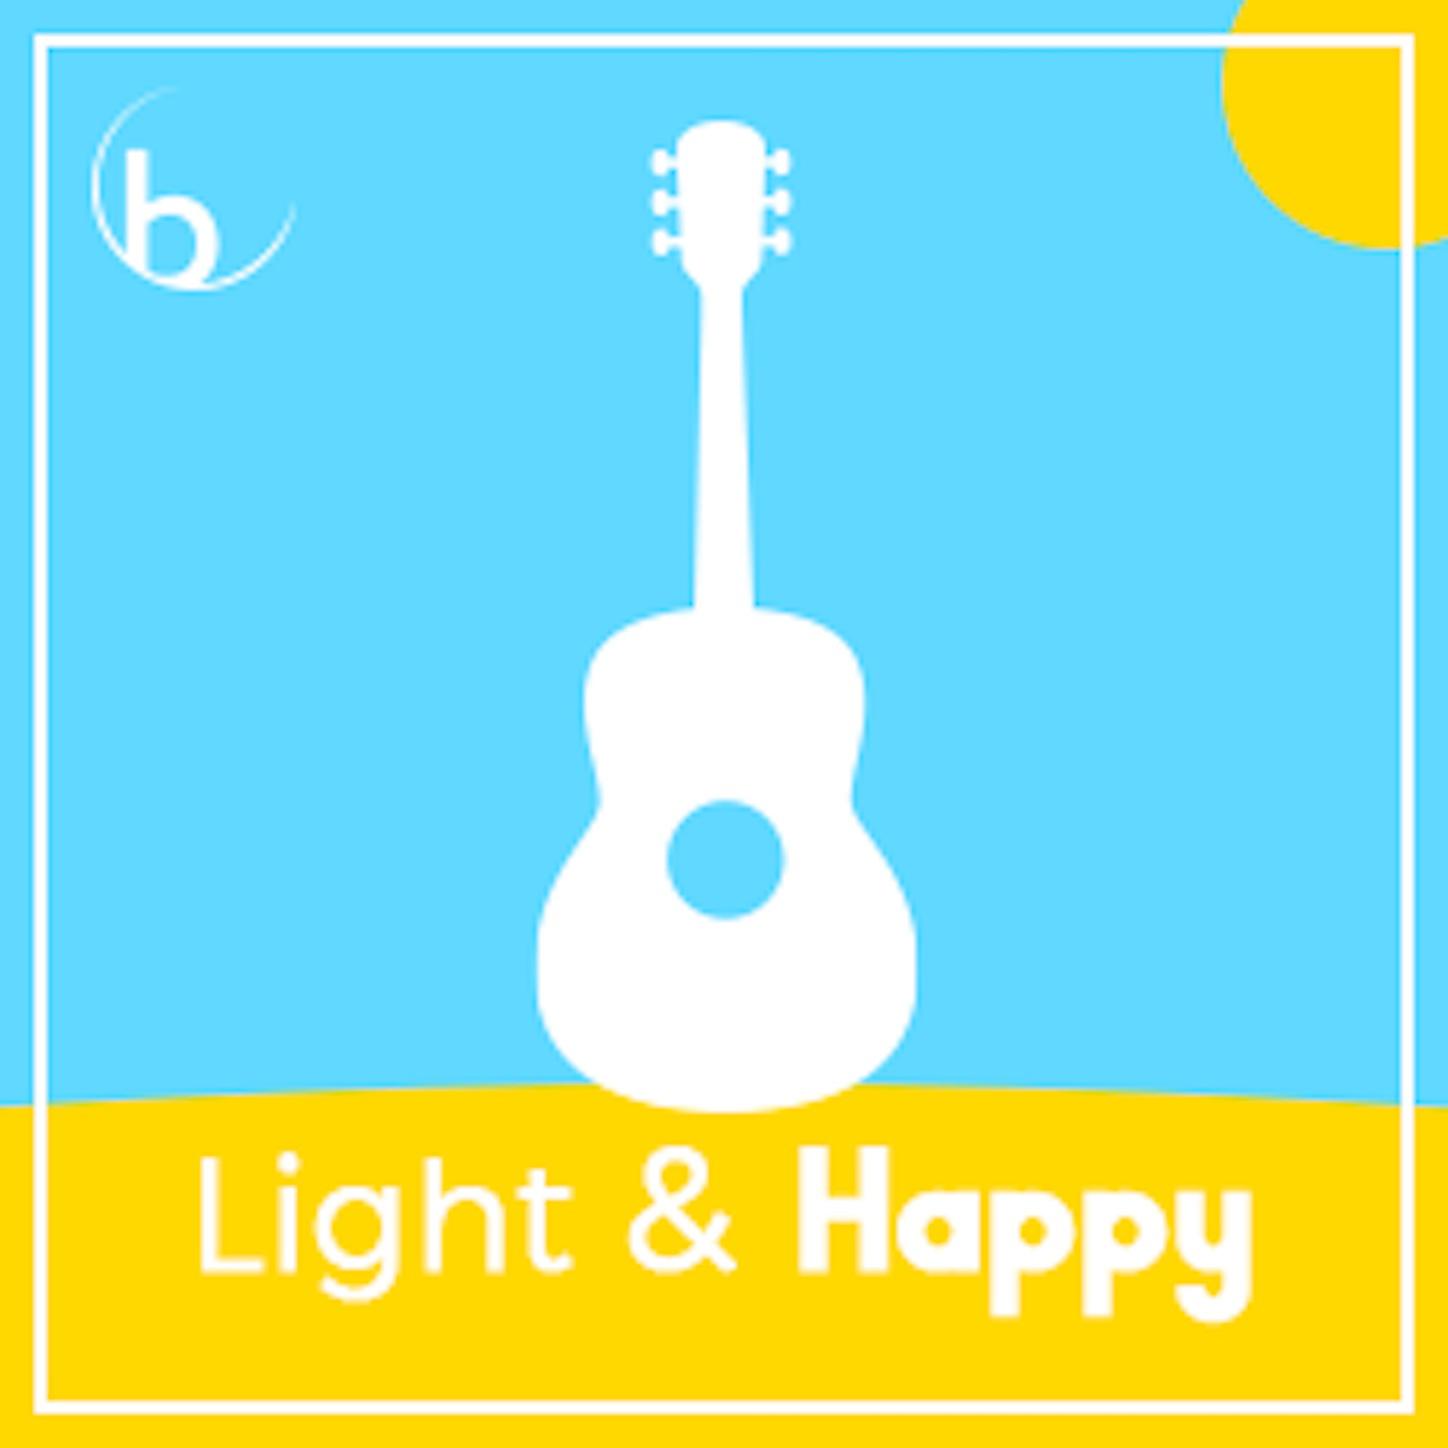 Light & Happy